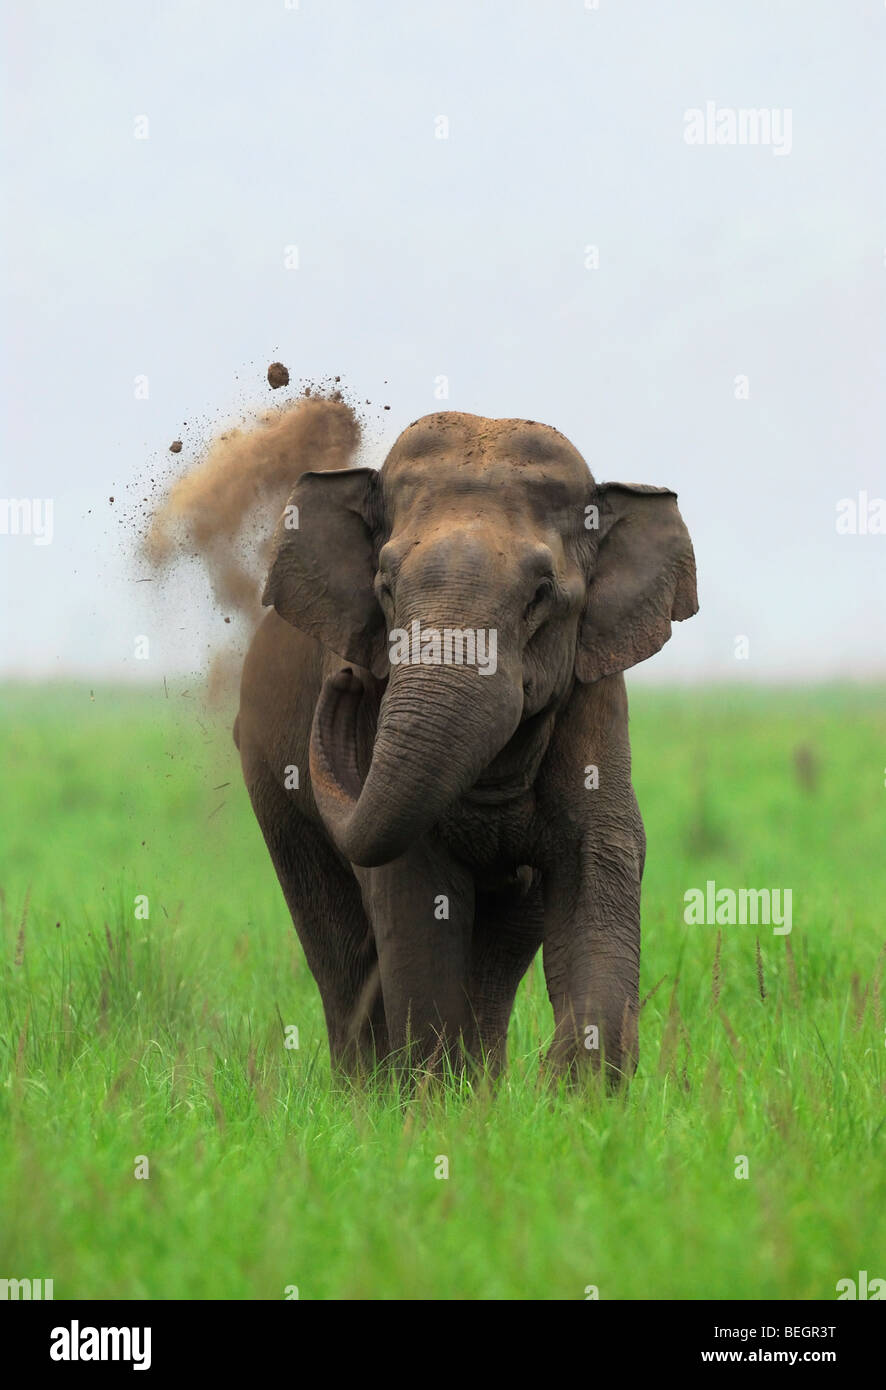 Indian Elephant taking Mud Bath Stock Photo